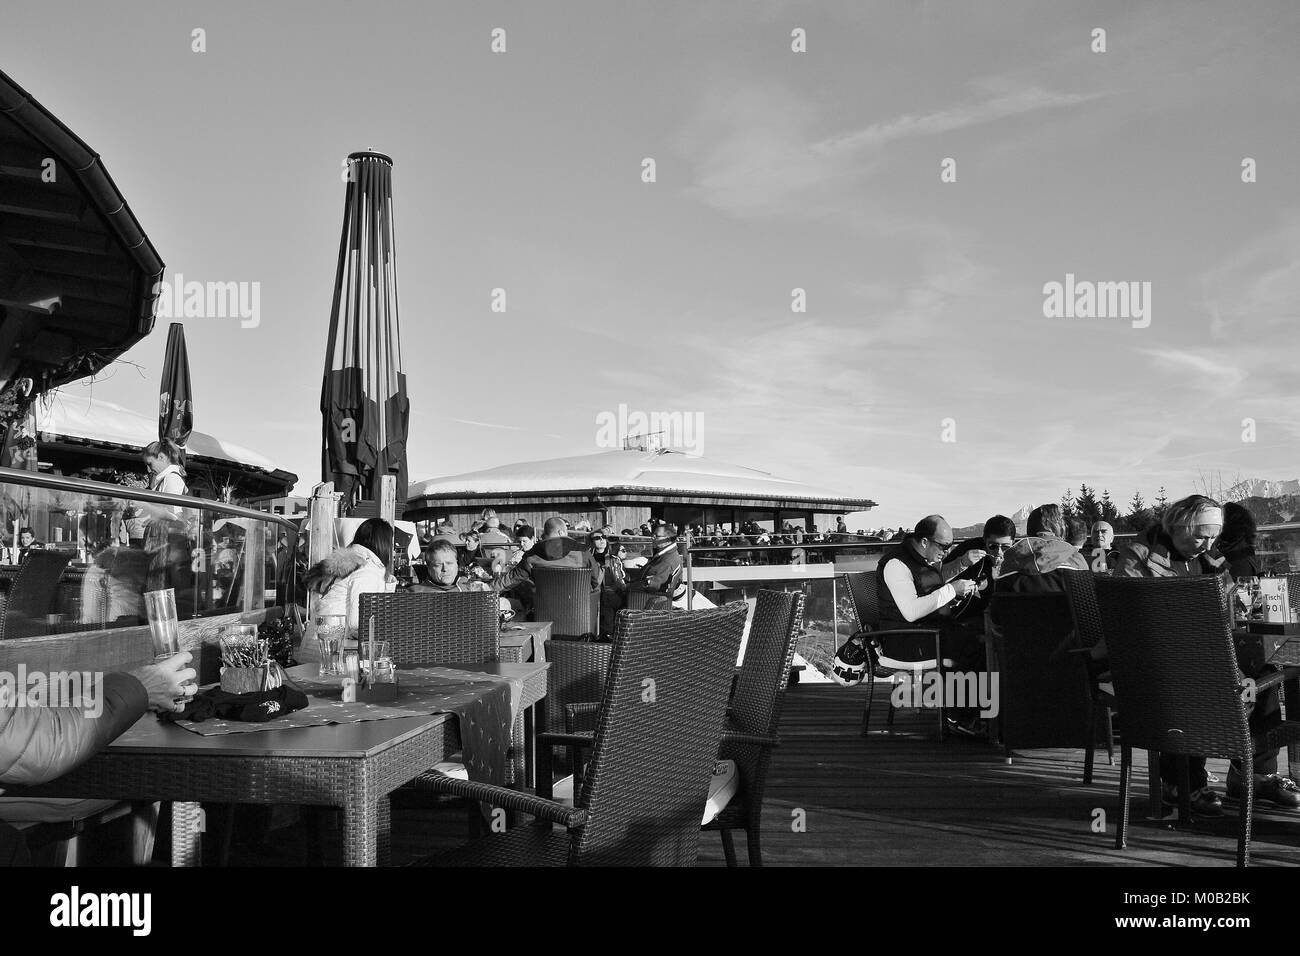 Sur la terrasse d'un restaurant de montagne. Les gens prennent une pause après le ski. Câble d'Areit station (1400m). Zell am See, Autriche, Europe. Banque D'Images